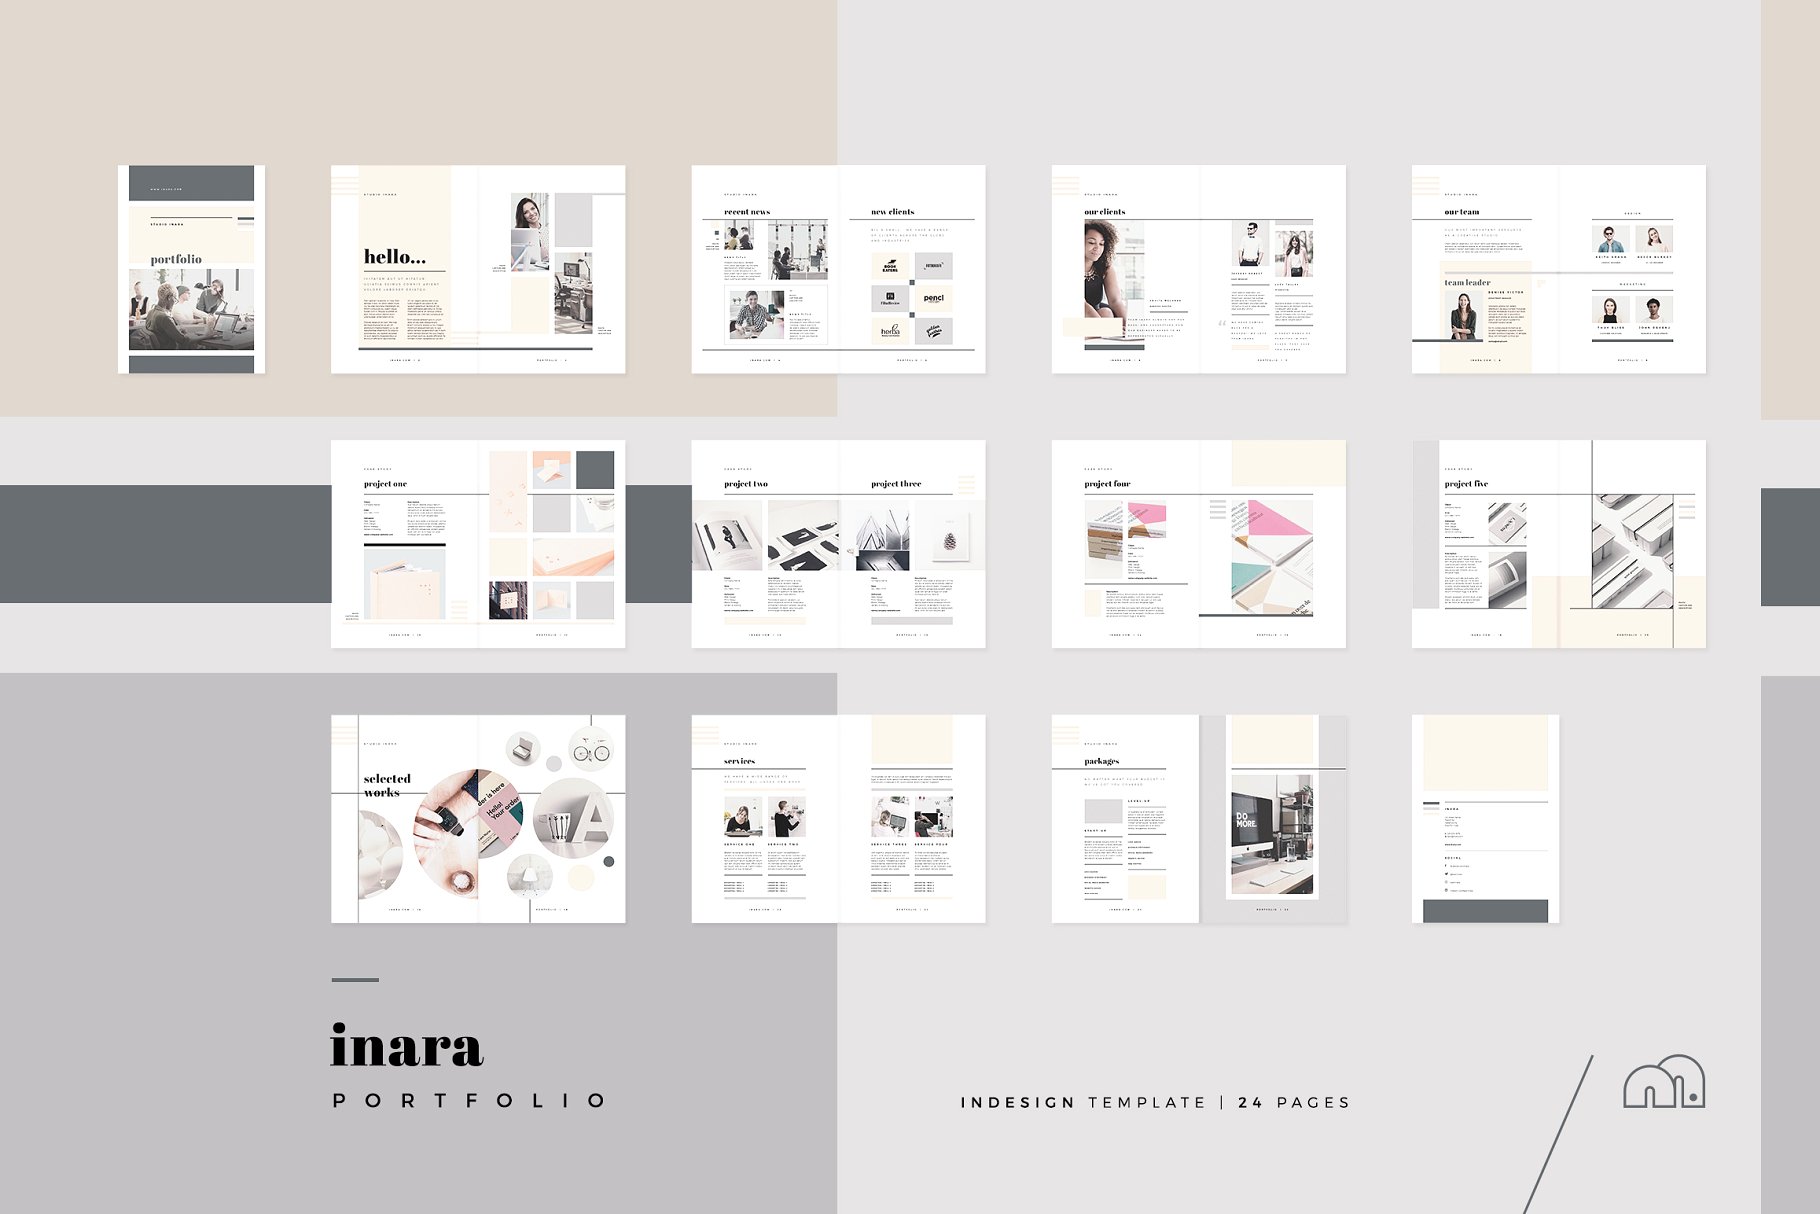 经典通用性企业宣传册设计模板 Portfolio – Inara插图(6)